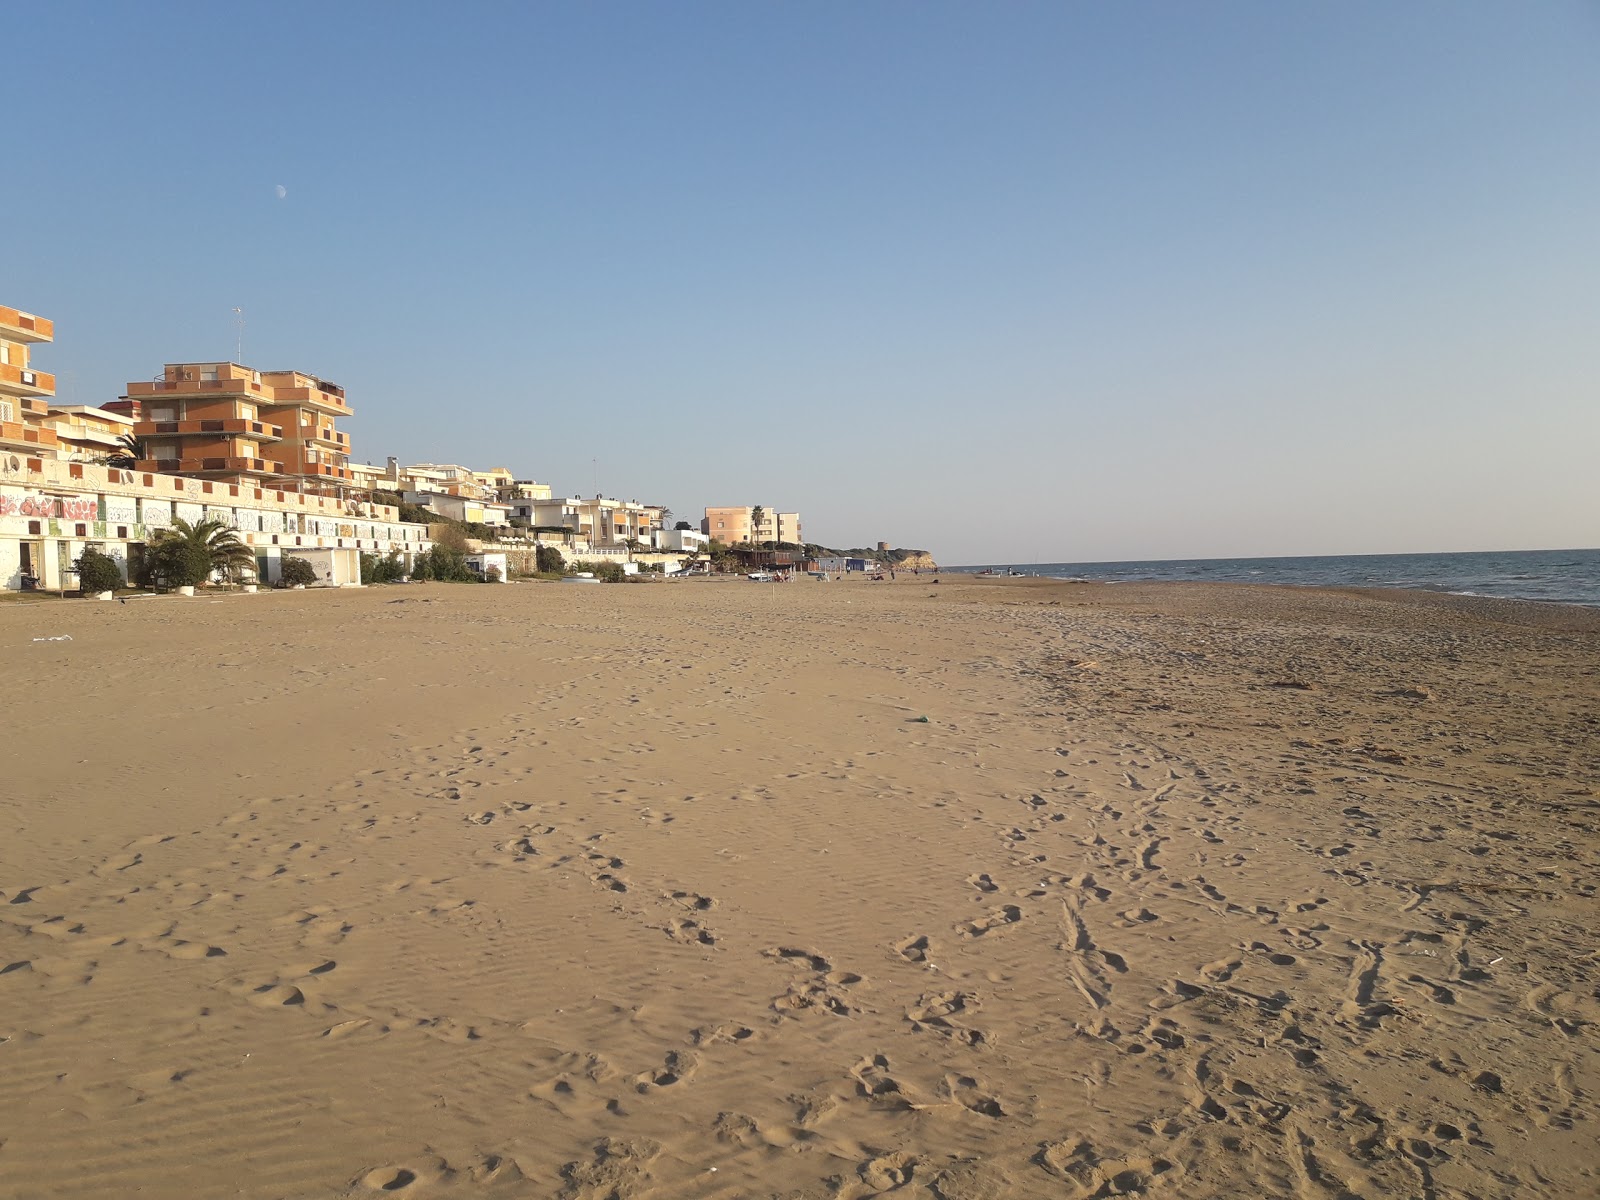 Fotografie cu Lavinio beach - locul popular printre cunoscătorii de relaxare